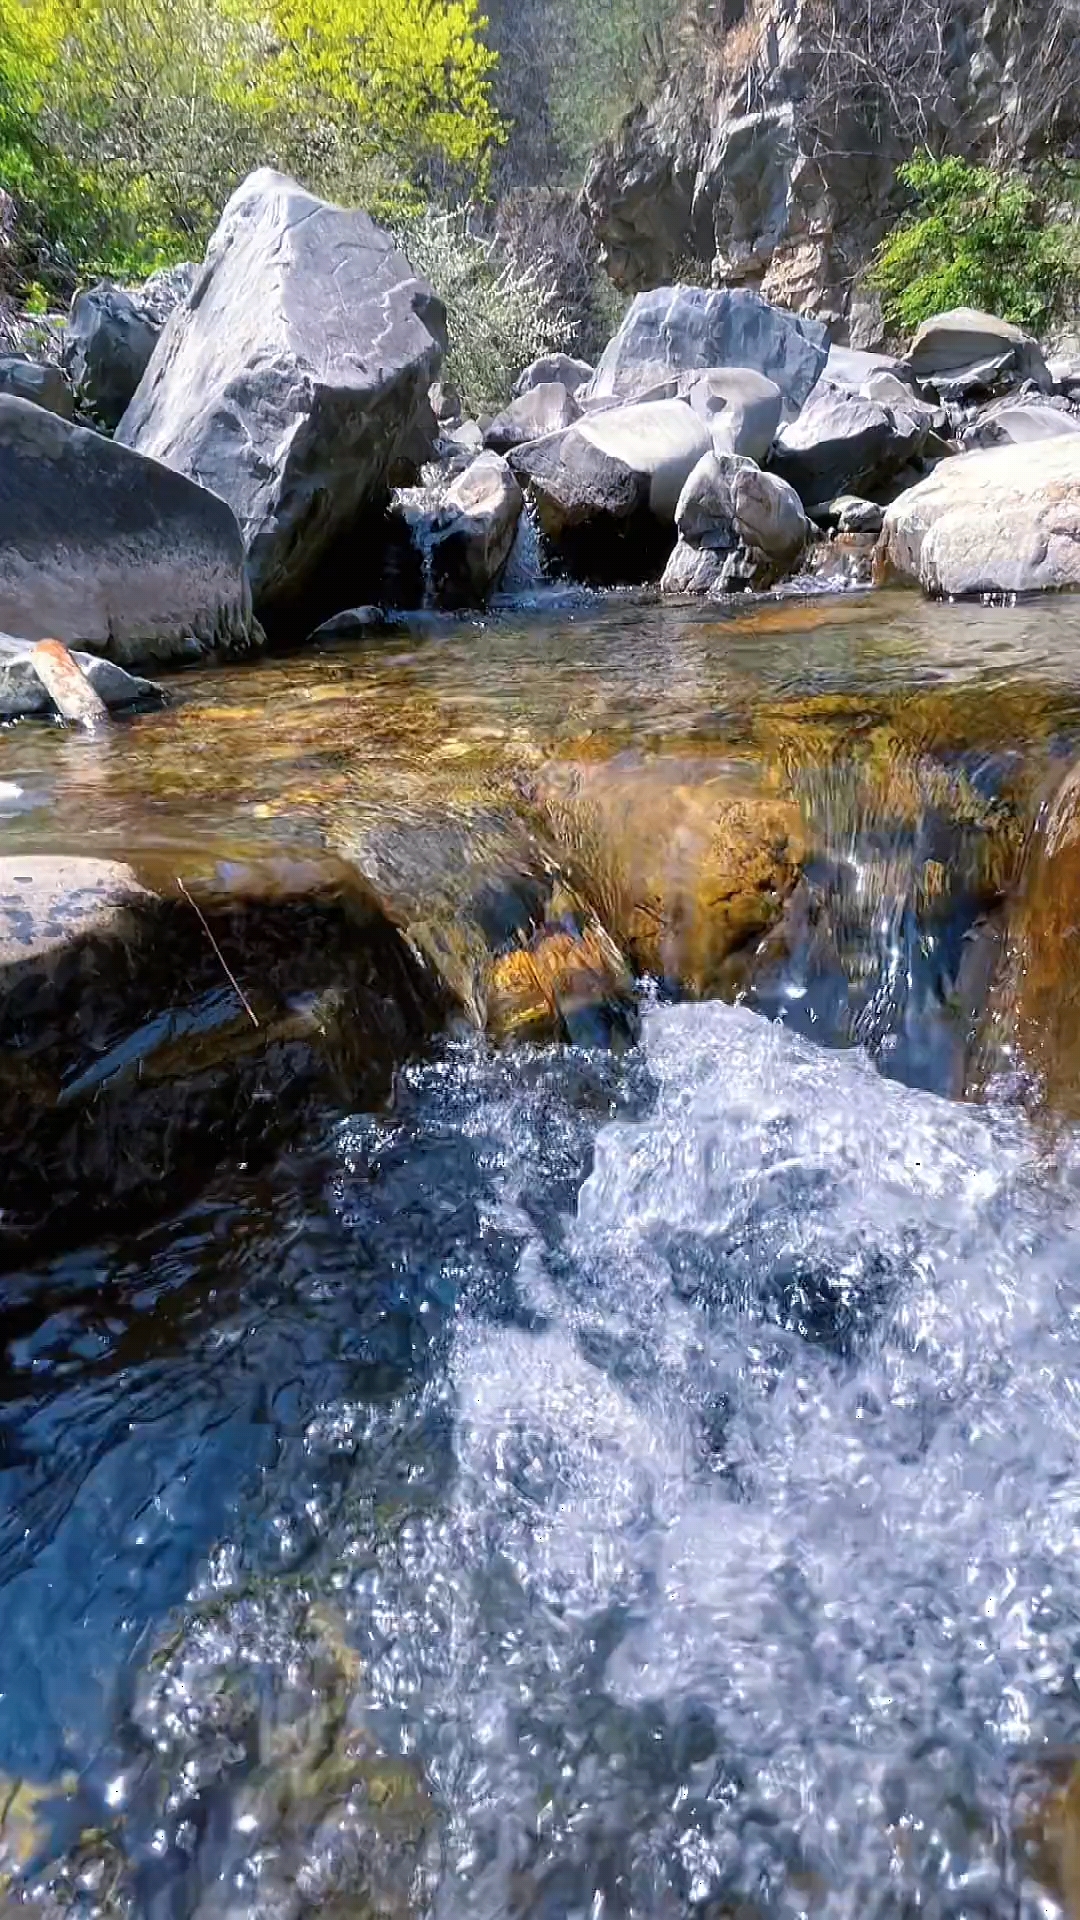 原生态无污染的小溪,清澈见底,鱼儿自由自在的游走